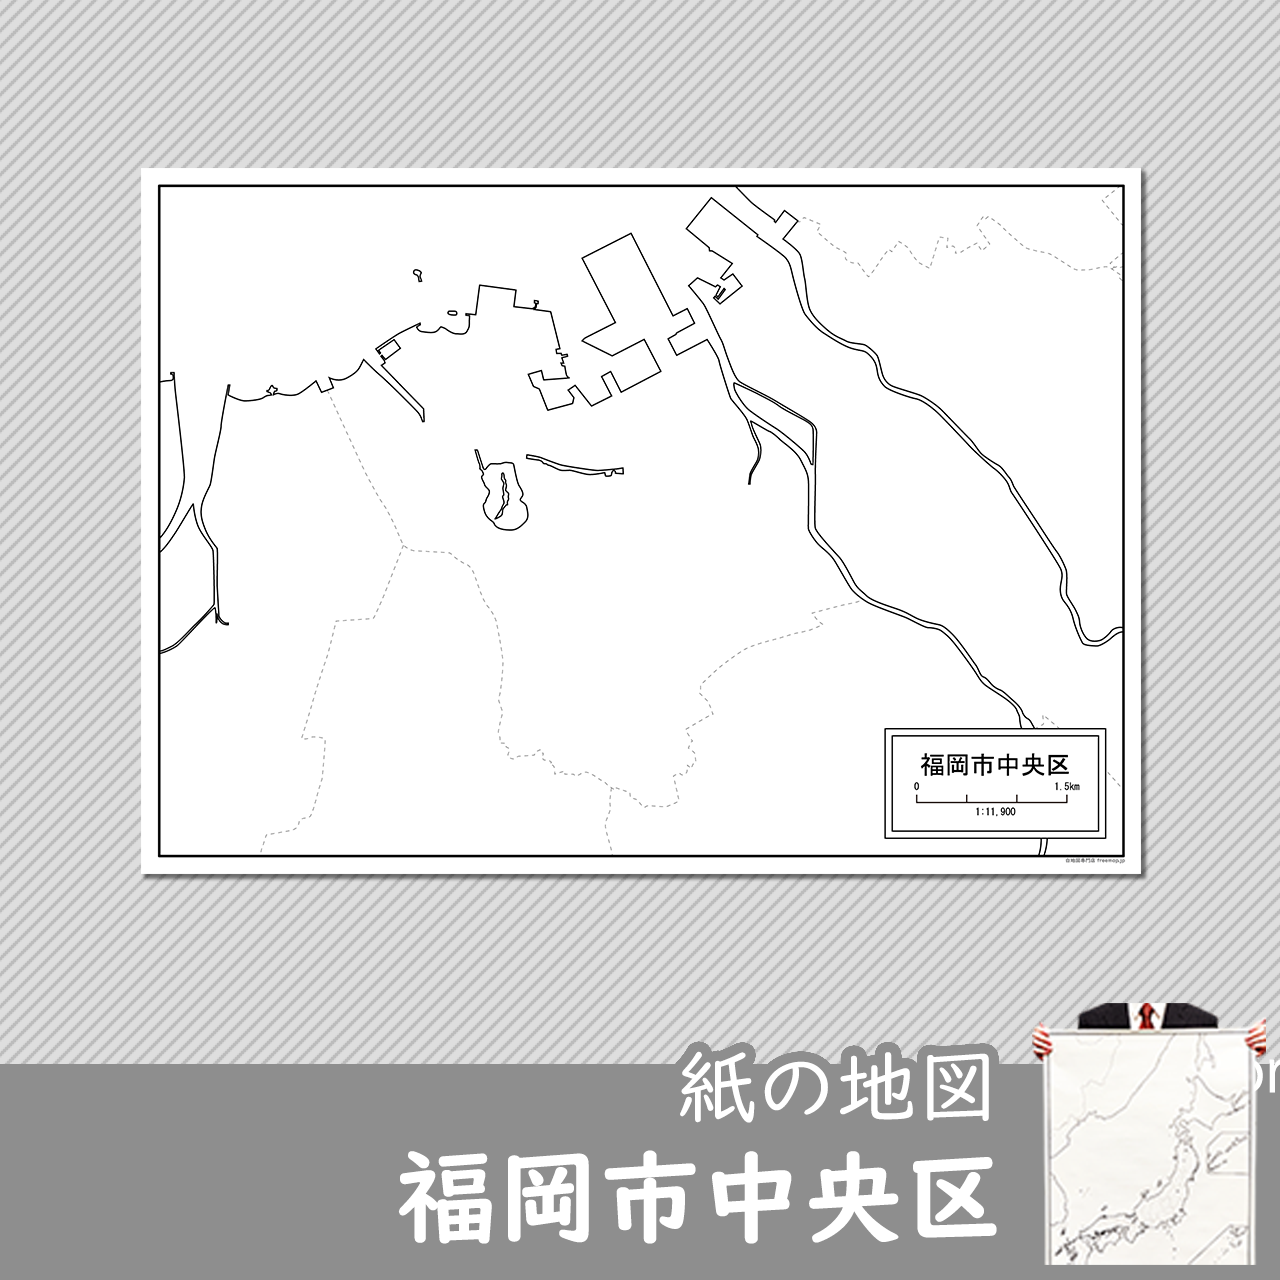 福岡市中央区の紙の白地図のサムネイル